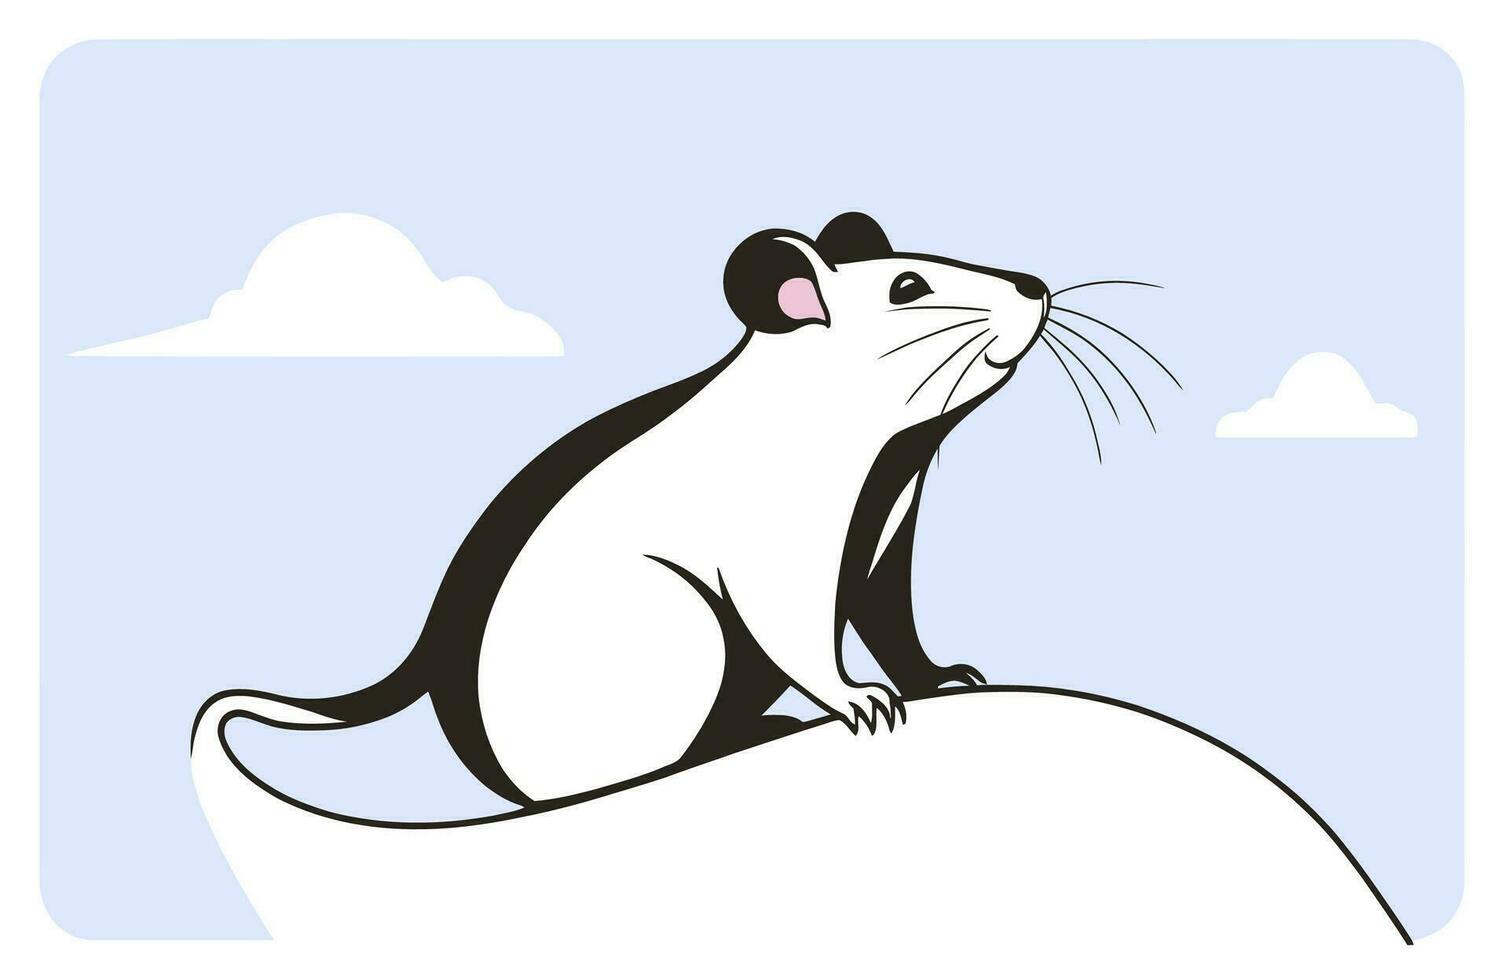 en vit och svart råtta på en bakgrund av en ljus blå himmel, vektor illustration.